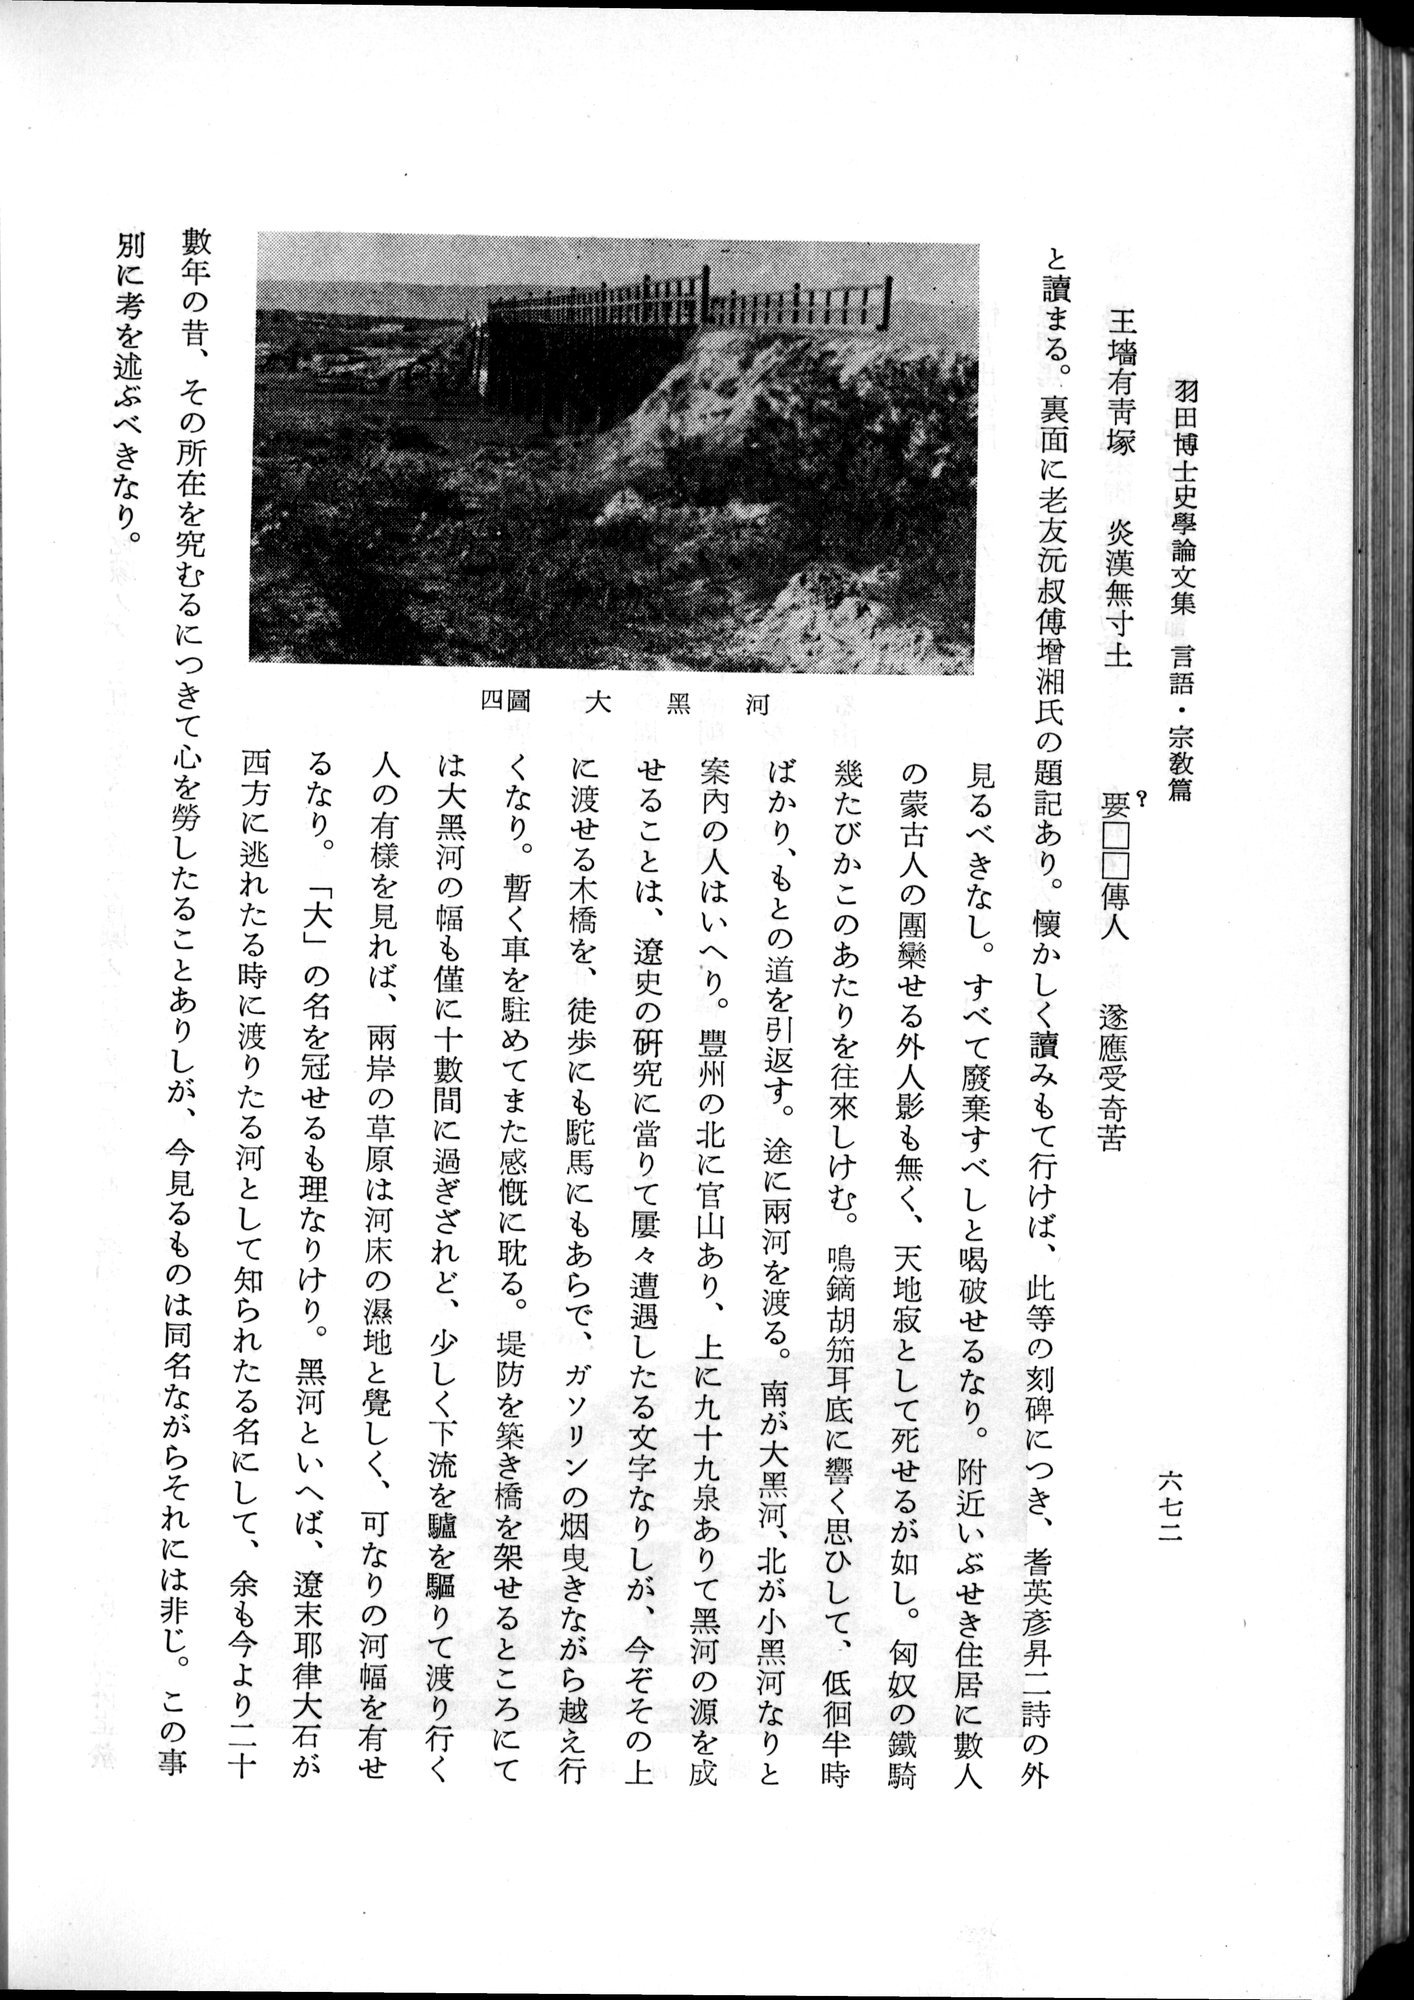 羽田博士史学論文集 : vol.2 / 736 ページ（白黒高解像度画像）